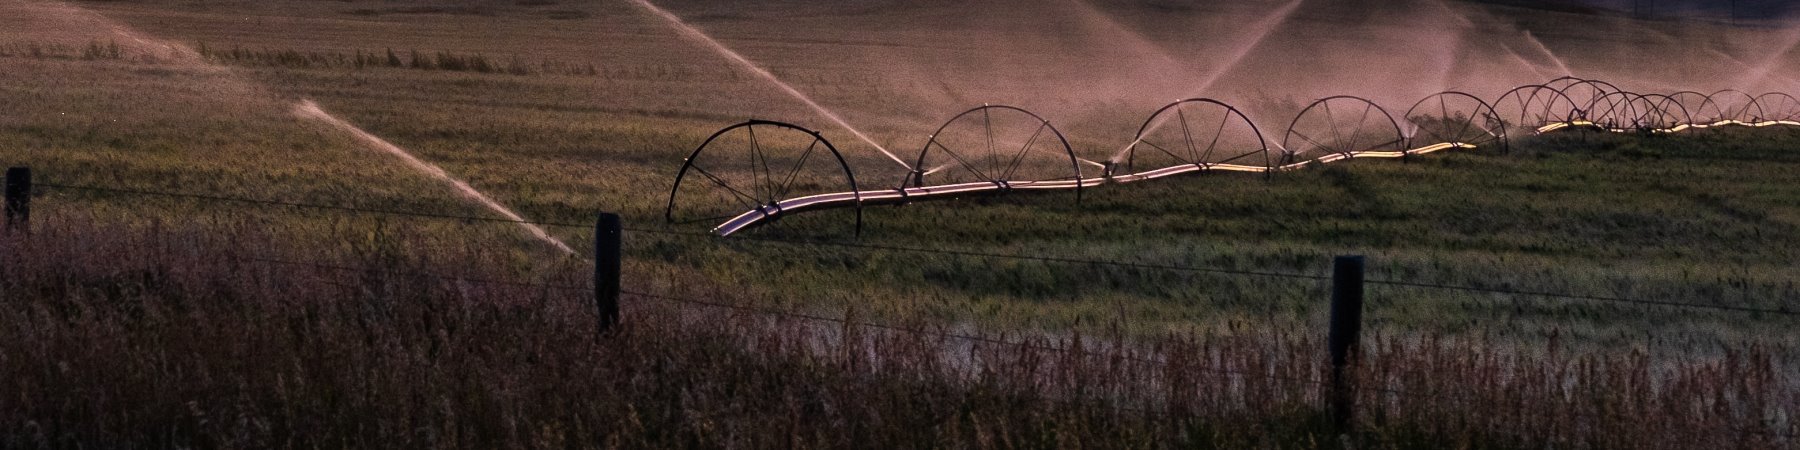 Slide – Irrigation